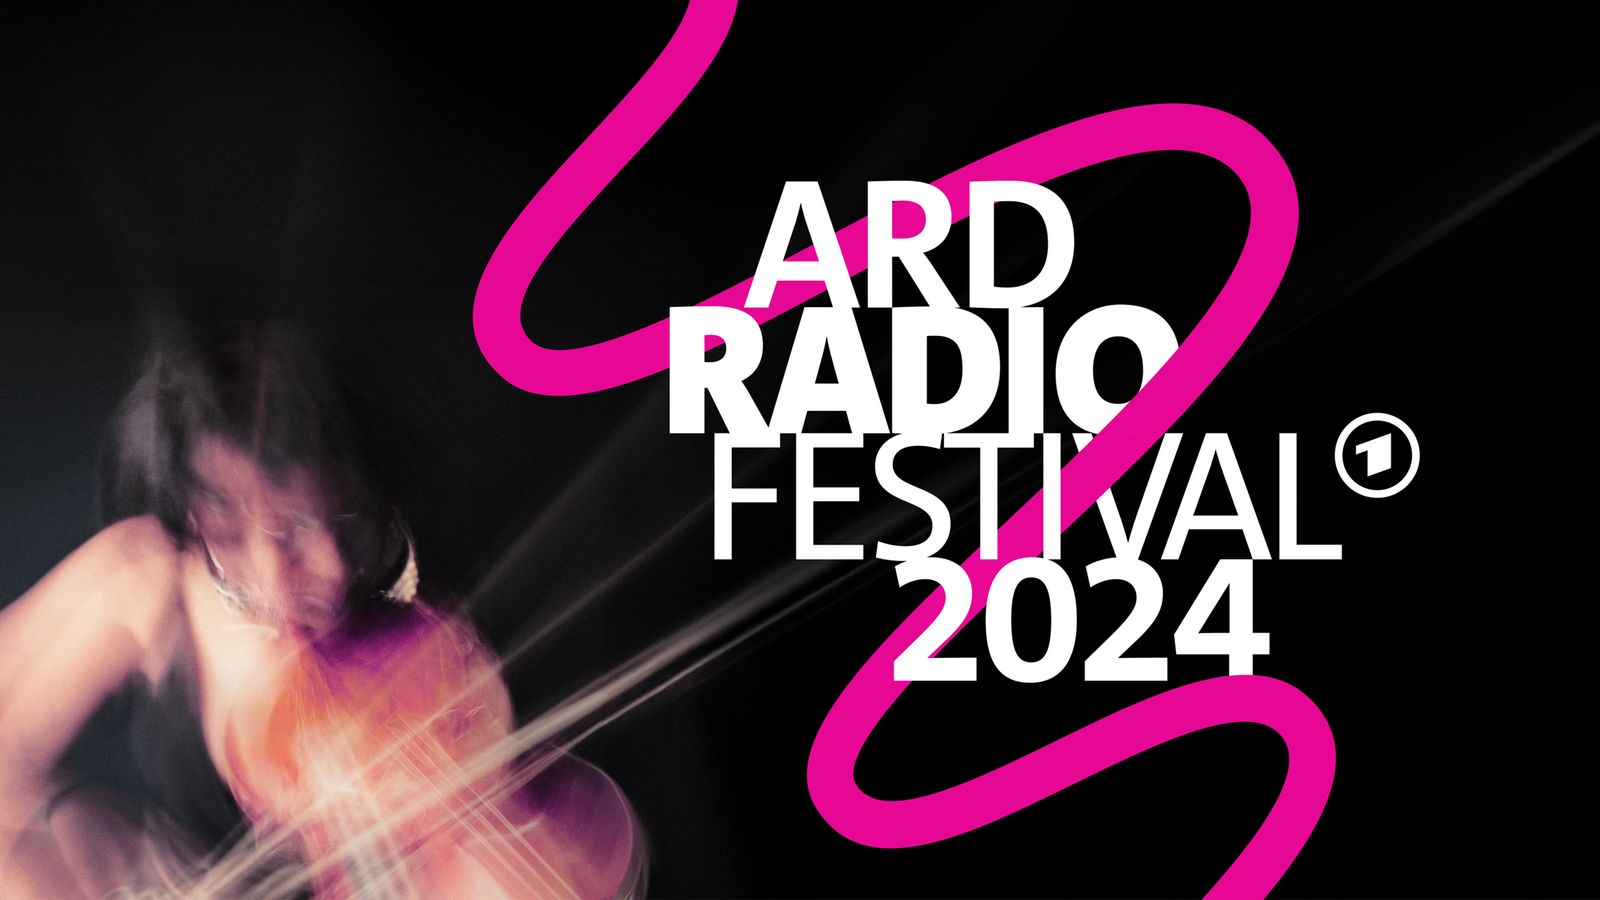 Keyvisual des ARD Radiofestival 2024